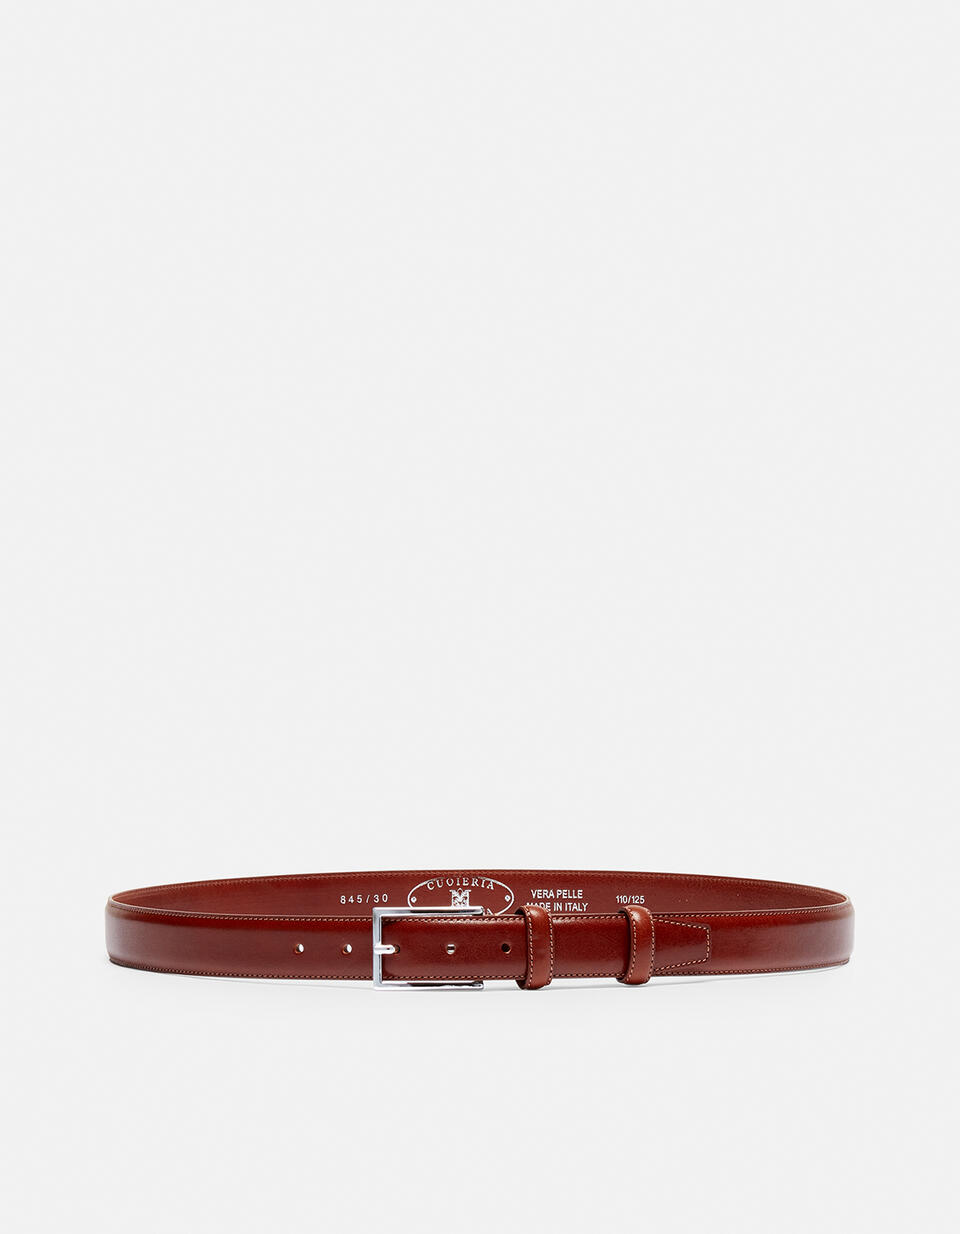 Cintura Elegante in Pelle con Punta quadra alta 3,0 cm - CINTURE UOMO | CINTURE  - CINTURE UOMO | CINTURECuoieria Fiorentina